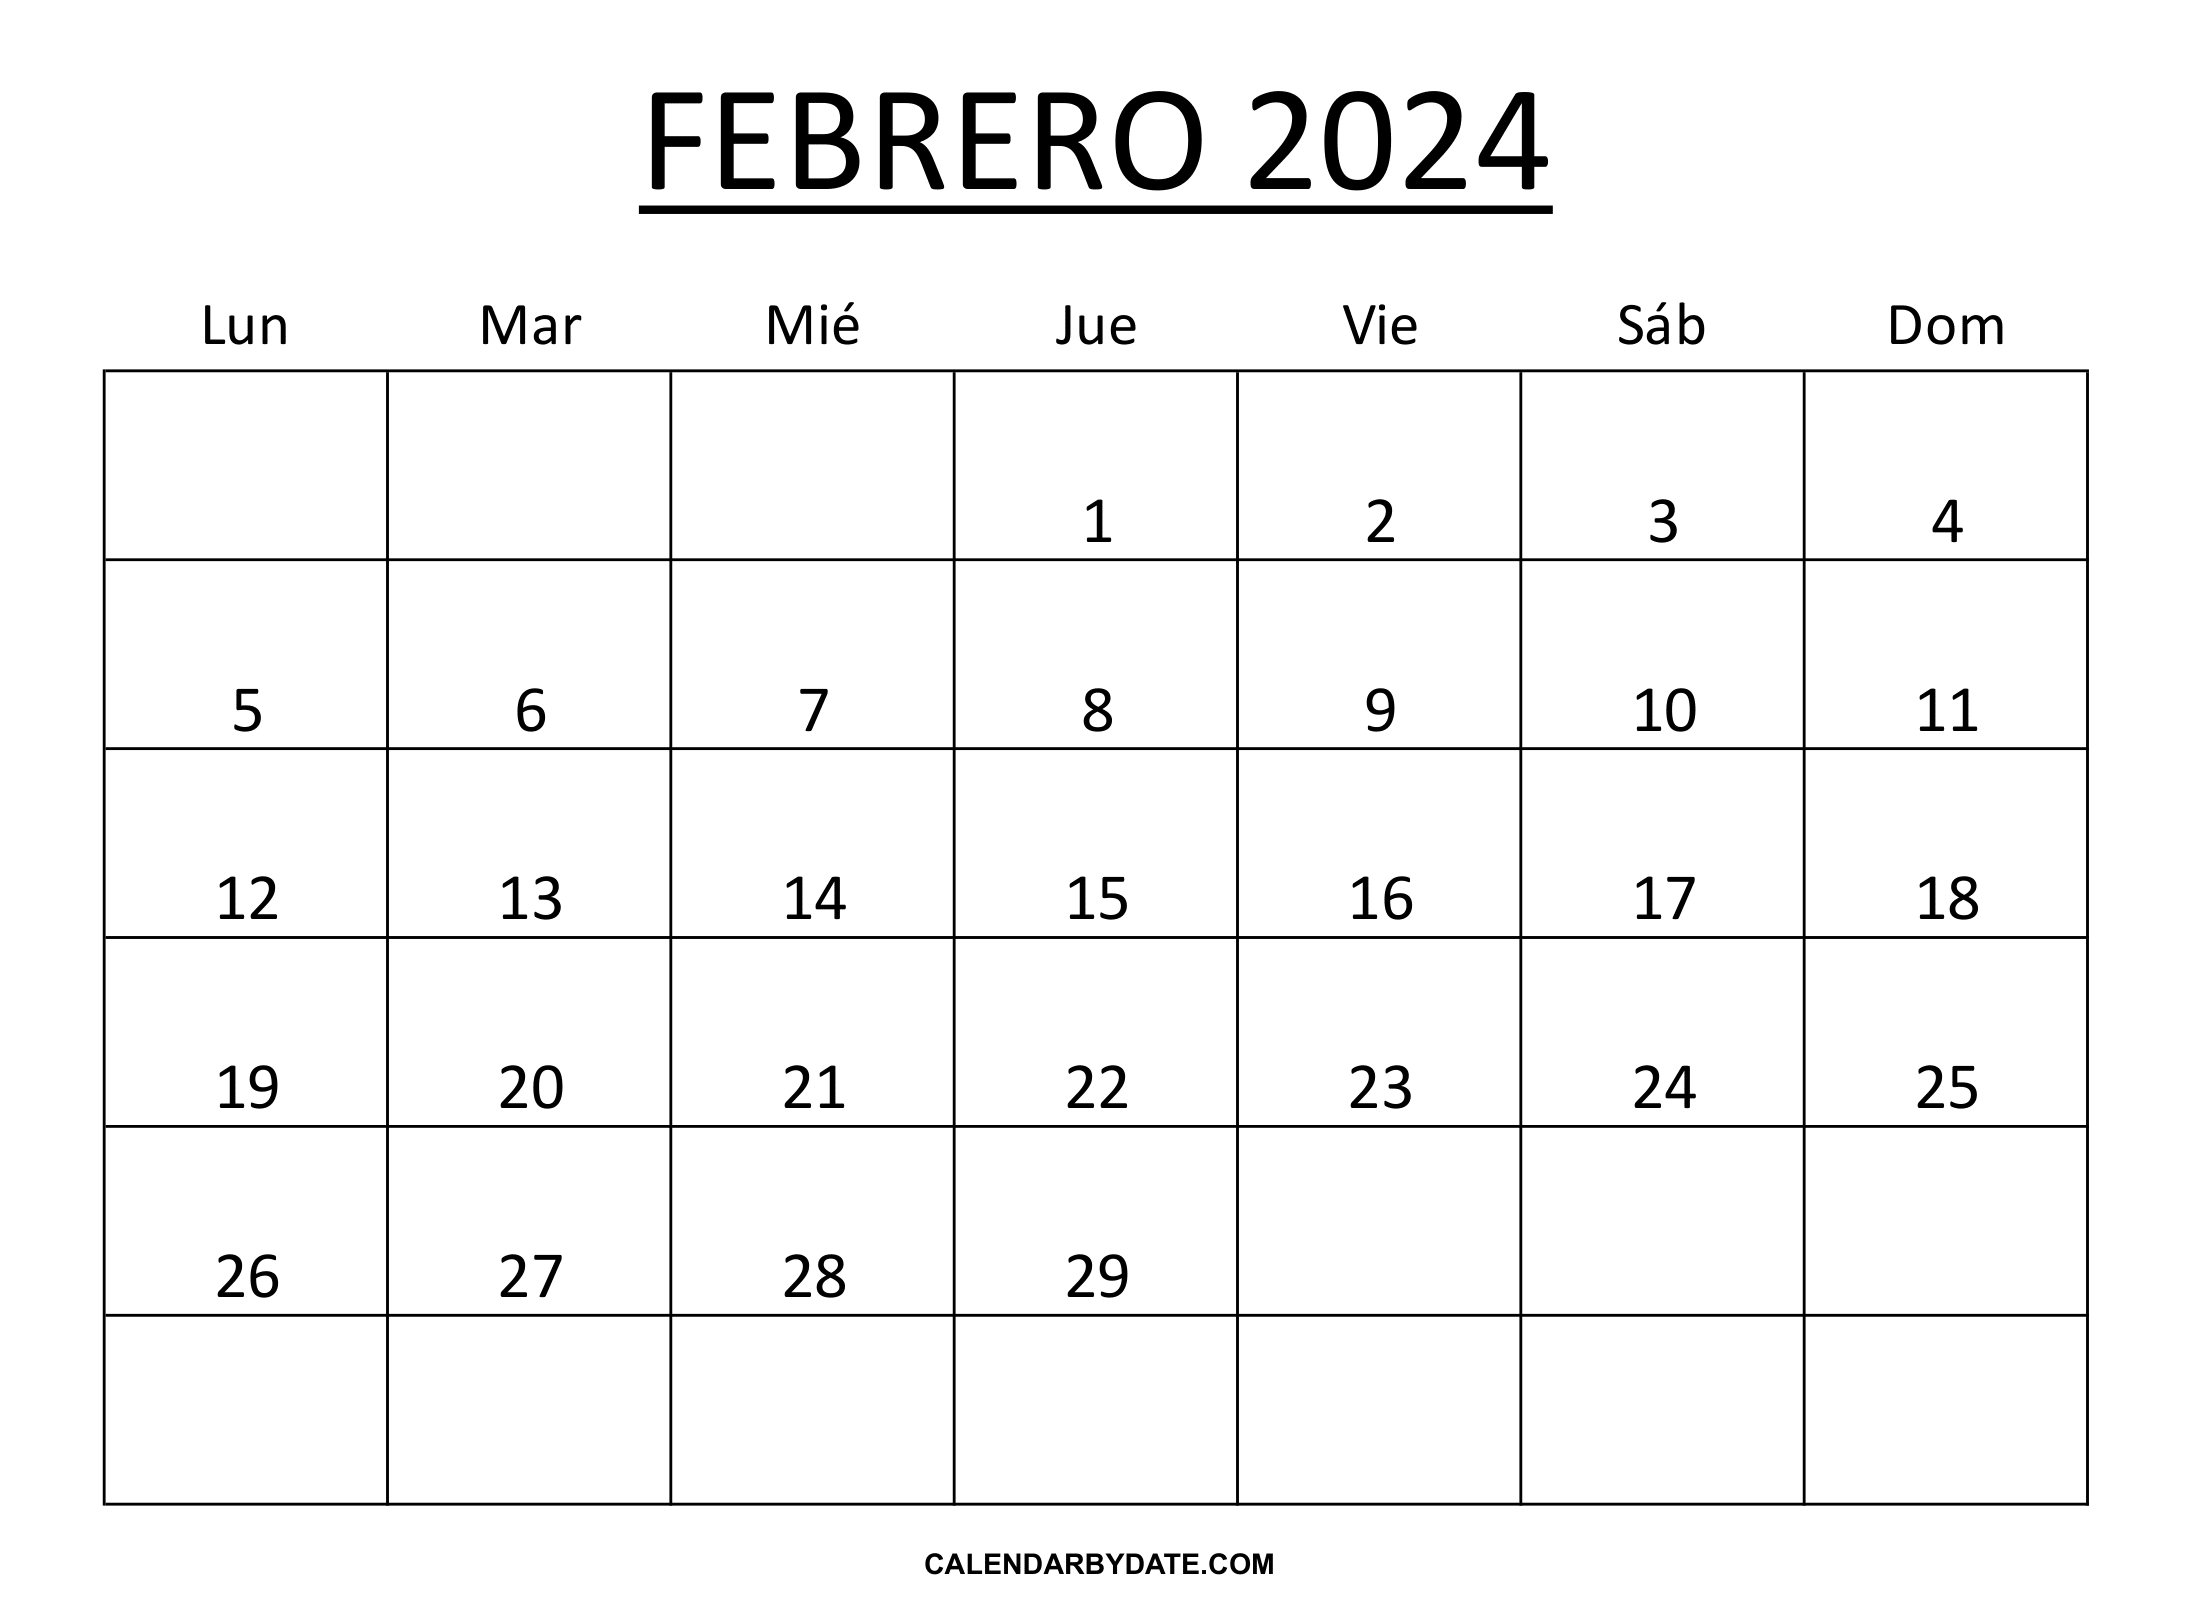 Calendario febrero 2024 mexico